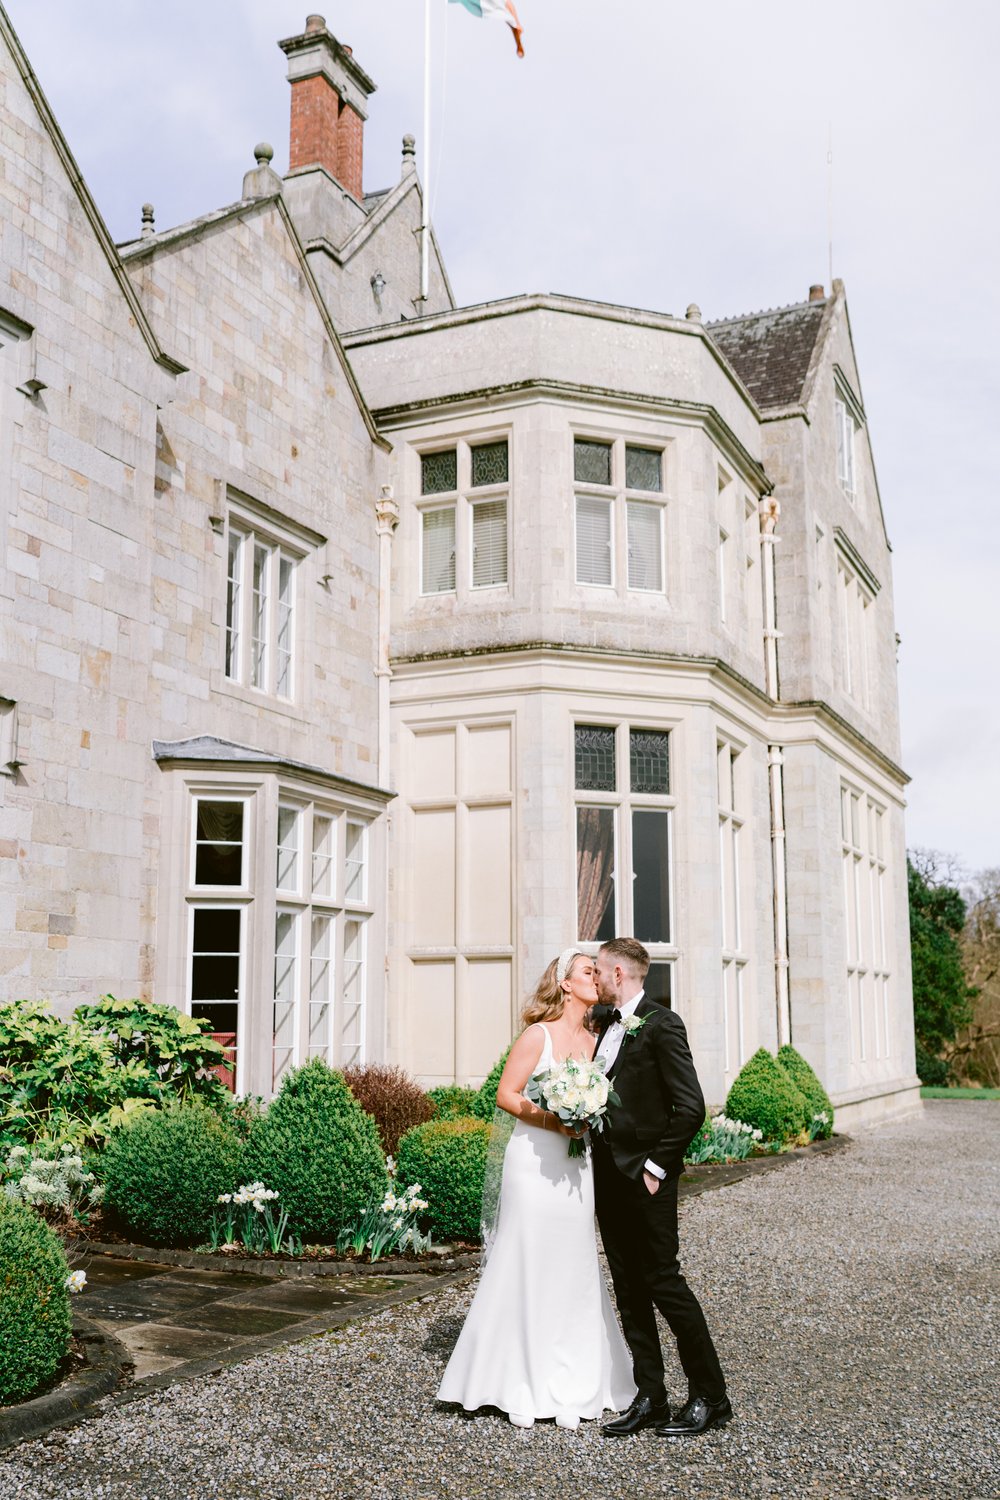 Lough Rynn wedding, wedding photographer Ireland, black tie wedding, Castle wedding Ireland,-43.jpg